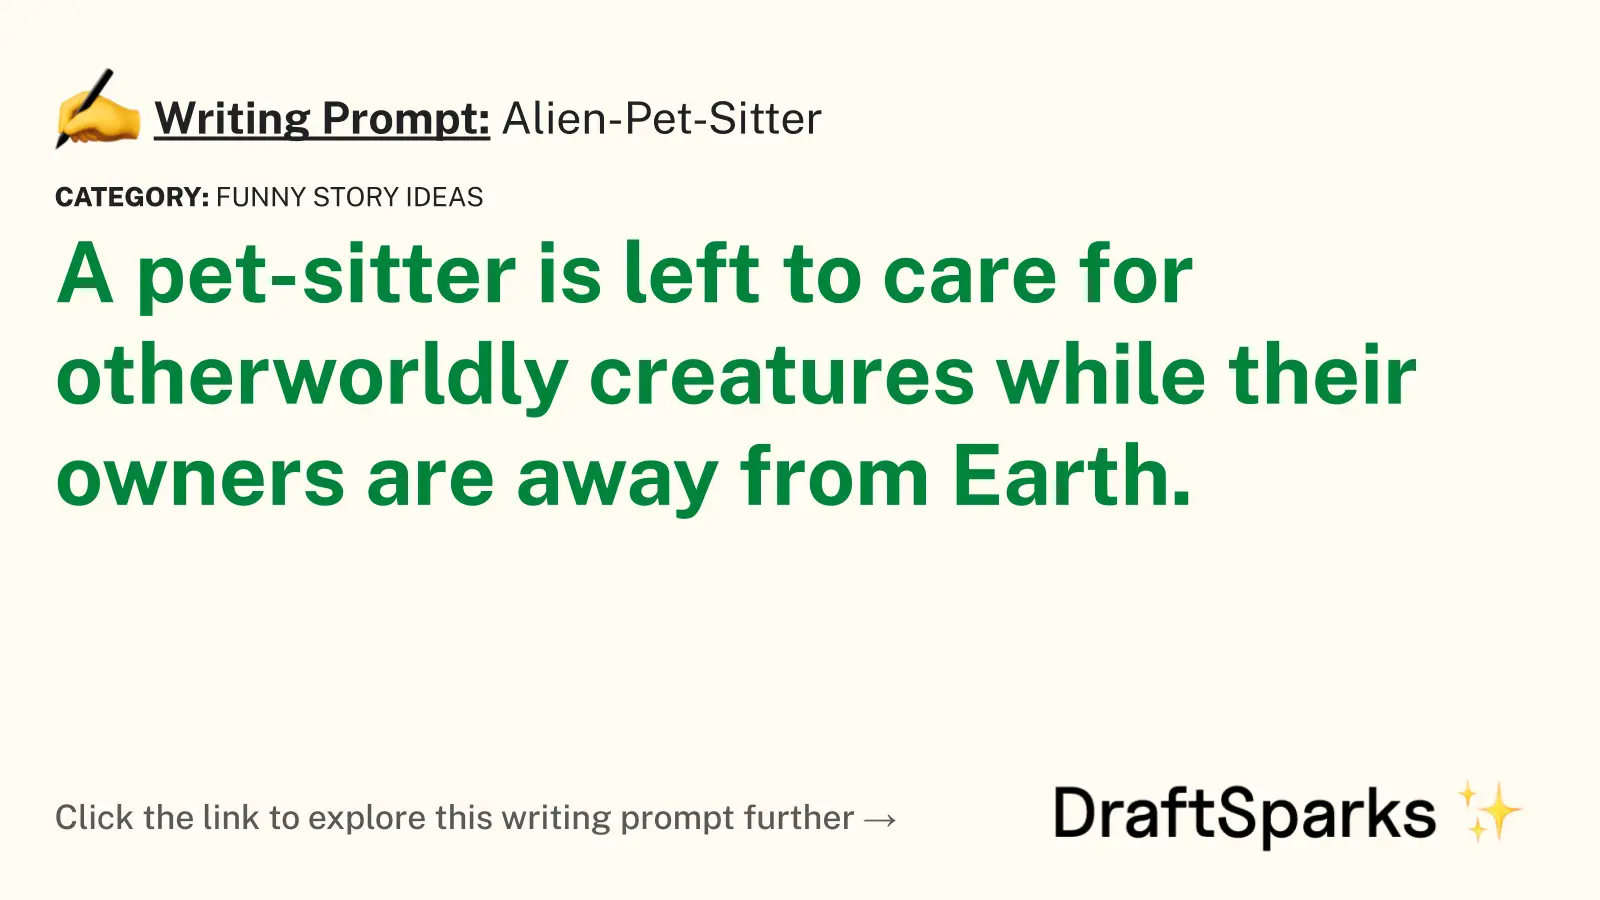 Alien-Pet-Sitter